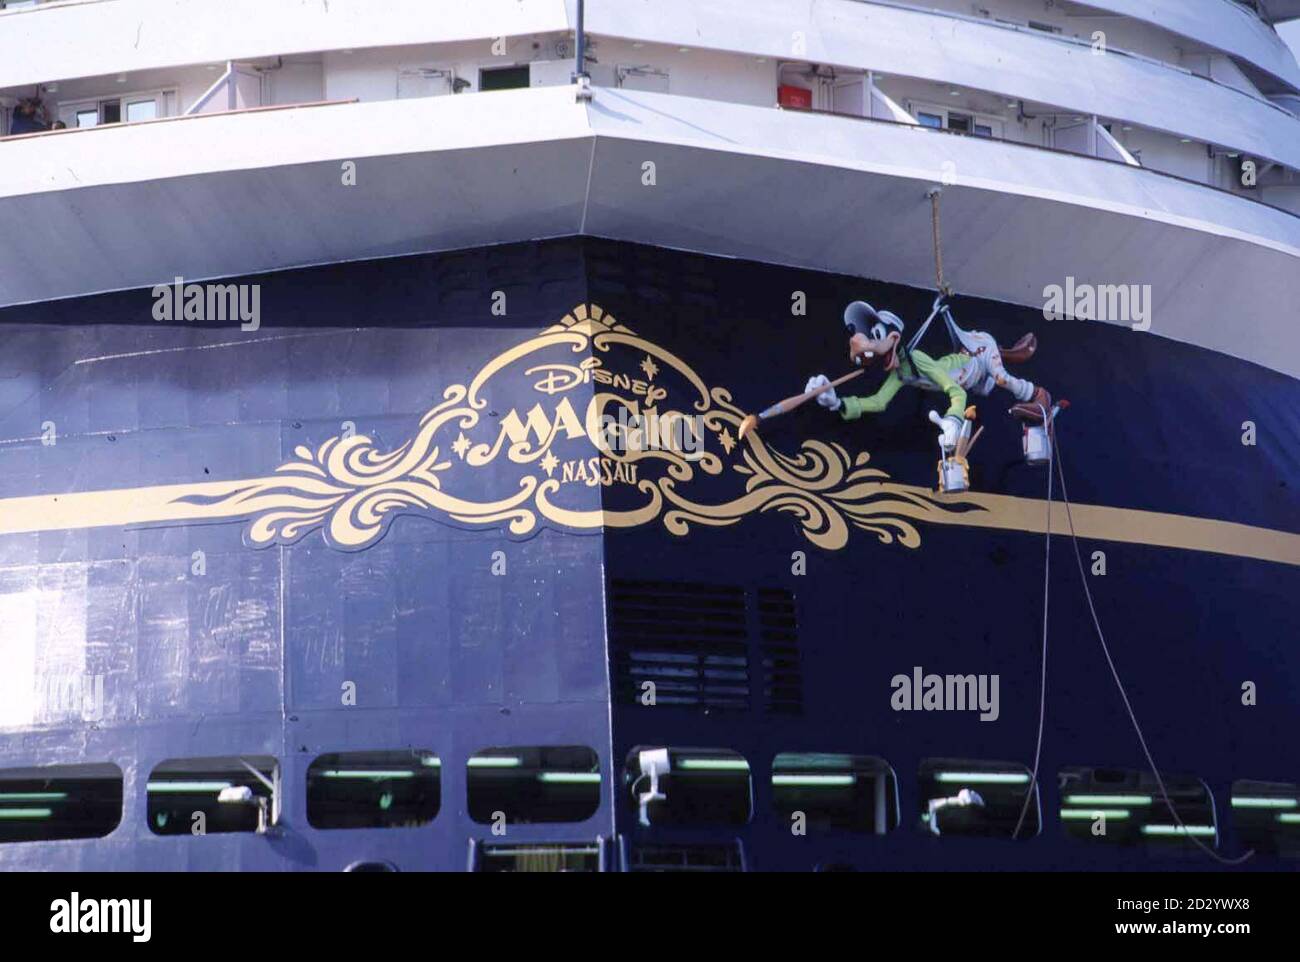 Goofey bringt den letzten Schliff zum neuen Disney Kreuzfahrtschiff, dem Disney Magic, das auf seinen elf Passagierdecks Platz für 2,400 Gäste bietet. Das Schiff ist eine neue Richtung für das Unternehmen, besser bekannt für seine Unterhaltung und Themenparks. Die sieben-Tage-Urlaubspakete kombinieren eine drei- oder viertägige Reise nach Walt Disney World in Florida mit einer drei- oder viertägigen Kreuzfahrt auf den Bahamas. Das 83,000-Tonnen-Schiff, eines der größten der Welt, wird von Port Canaveral in Florida aus segeln, den historischen Hafen von Nassau anlaufen und einen Tag auf Disneys eigener privater Vergnügungsinsel auf den Bahamas verbringen, gegossen Stockfoto